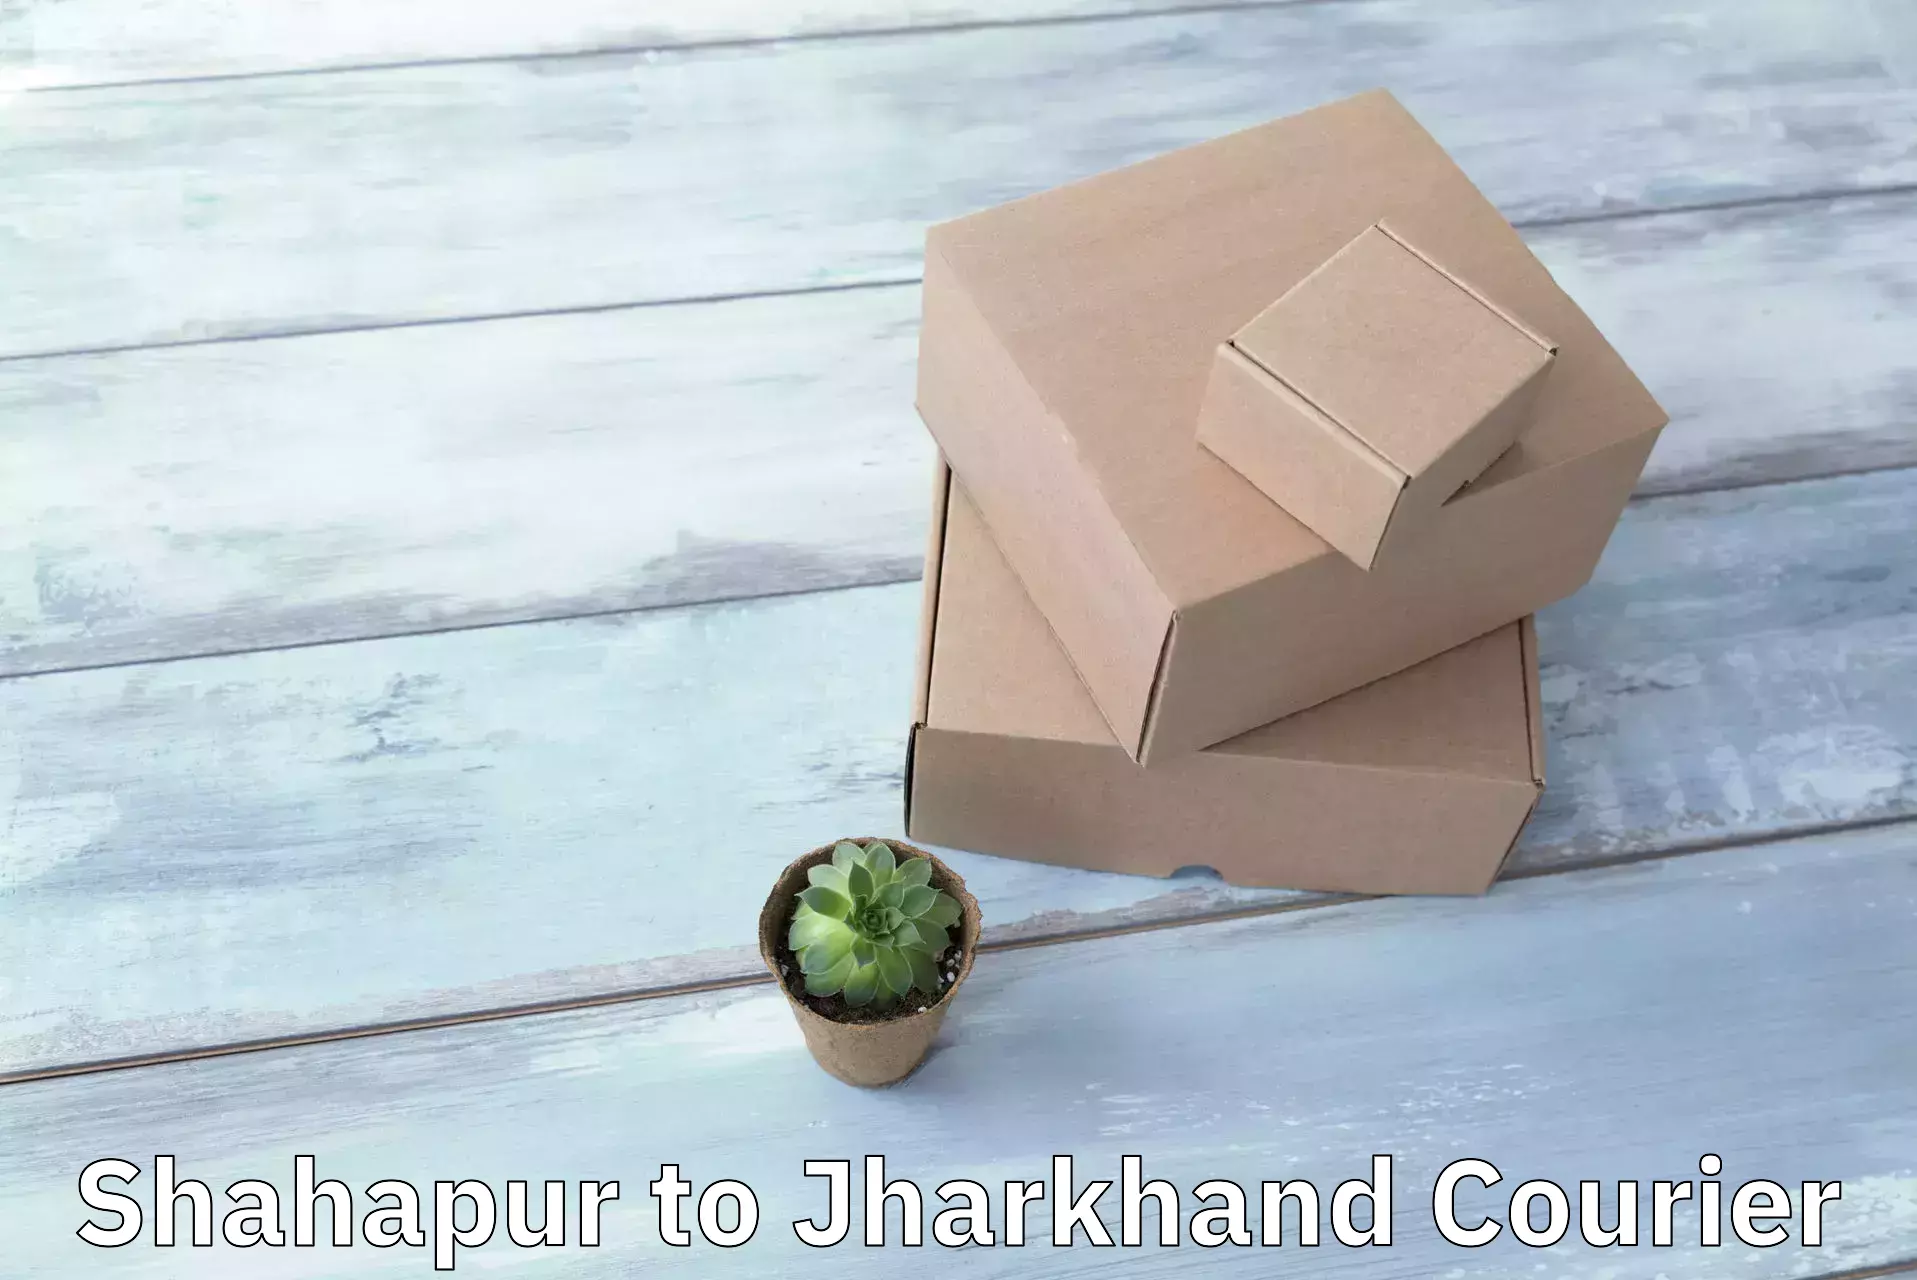 Courier service comparison Shahapur to Latehar